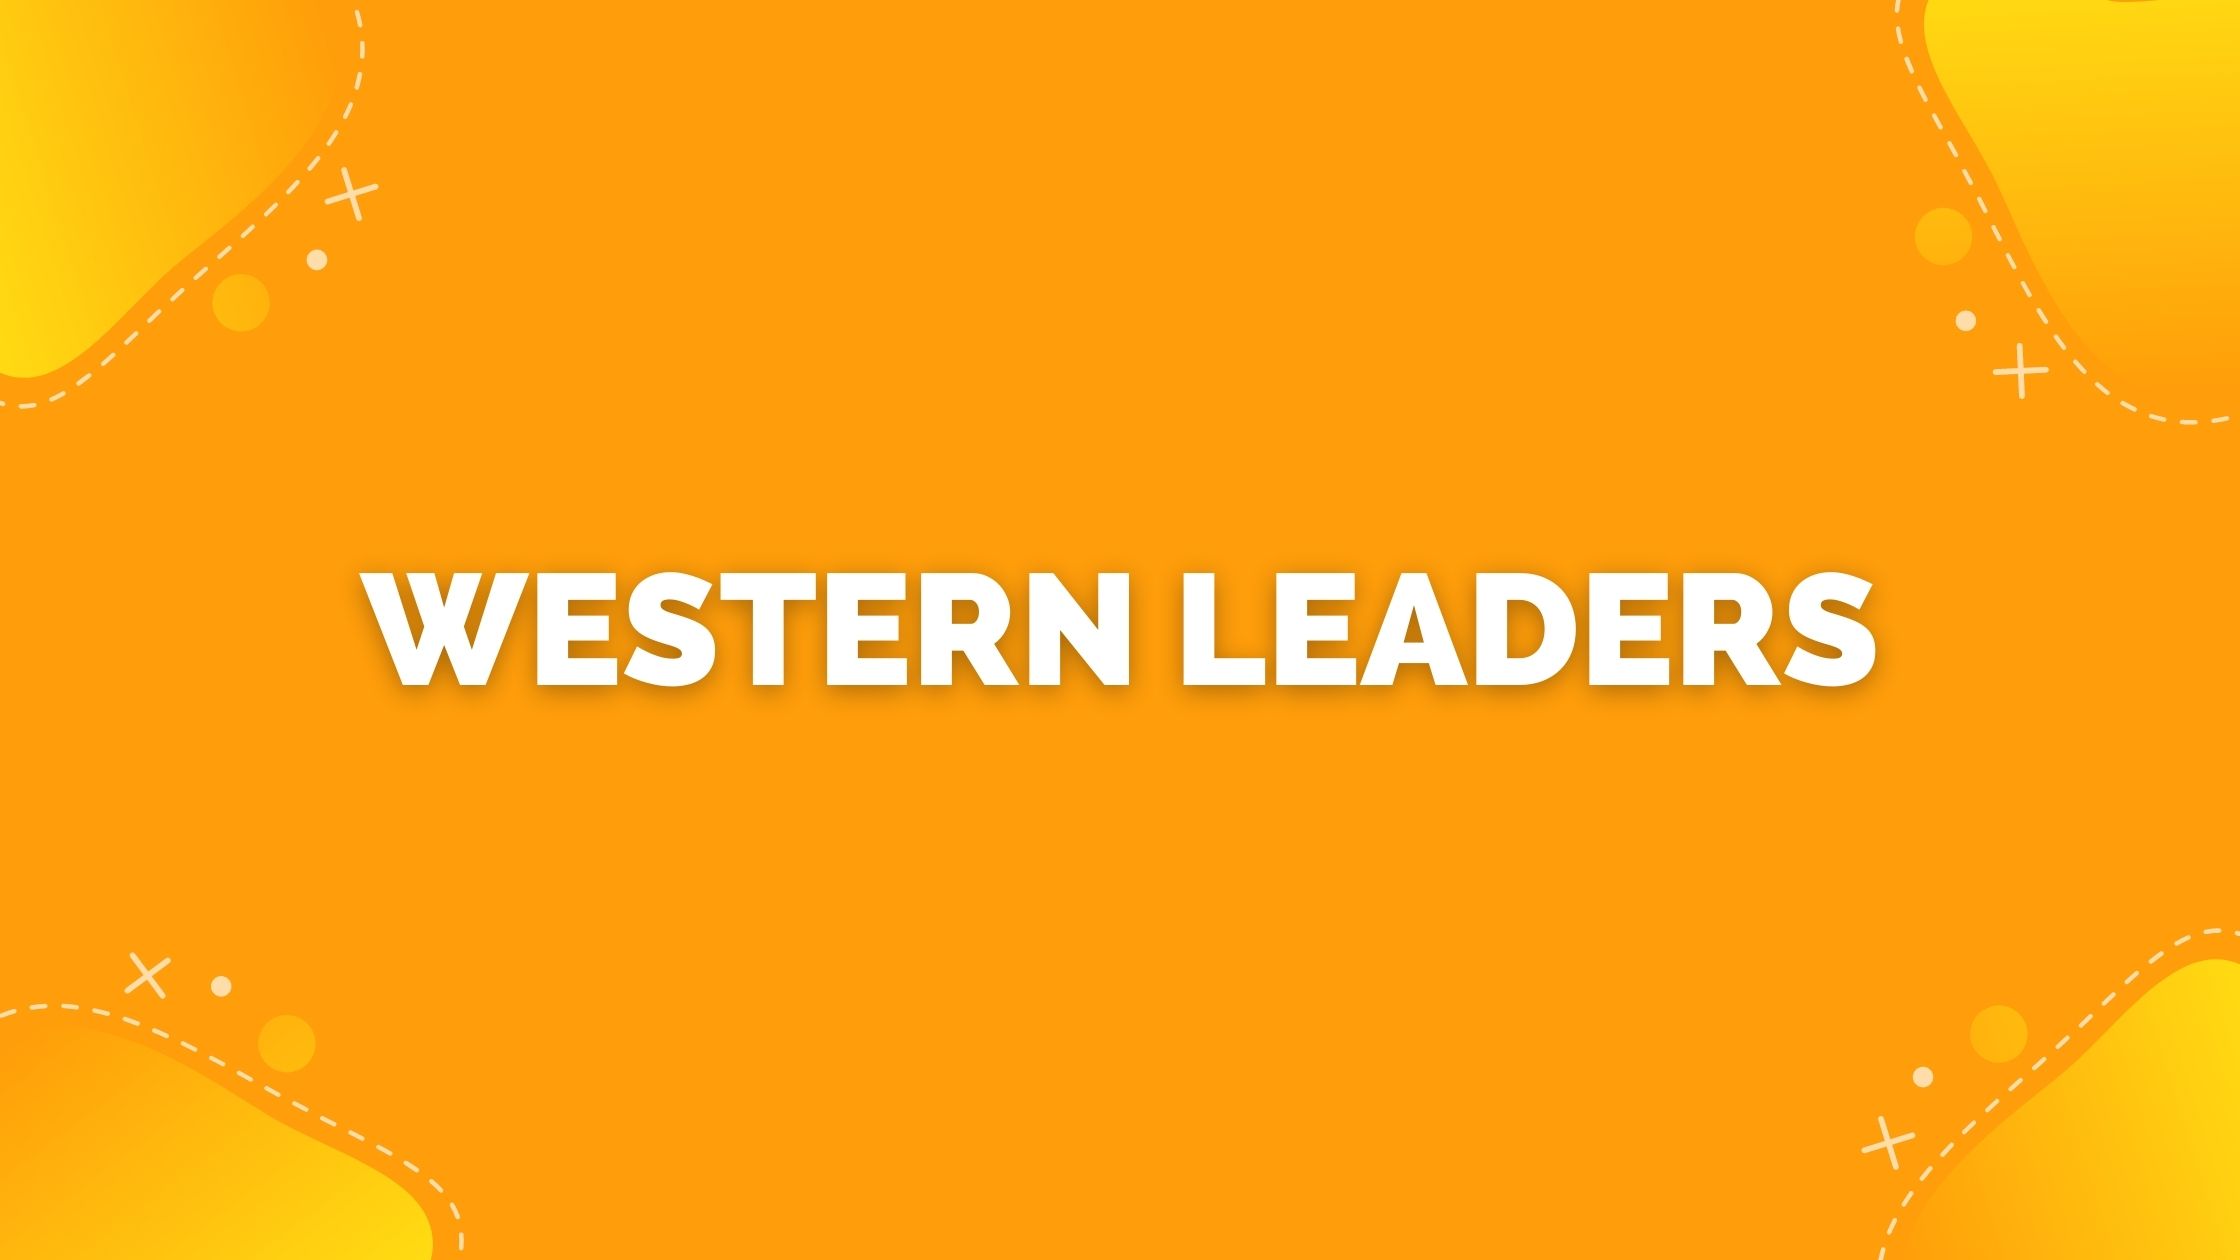 Western leaders